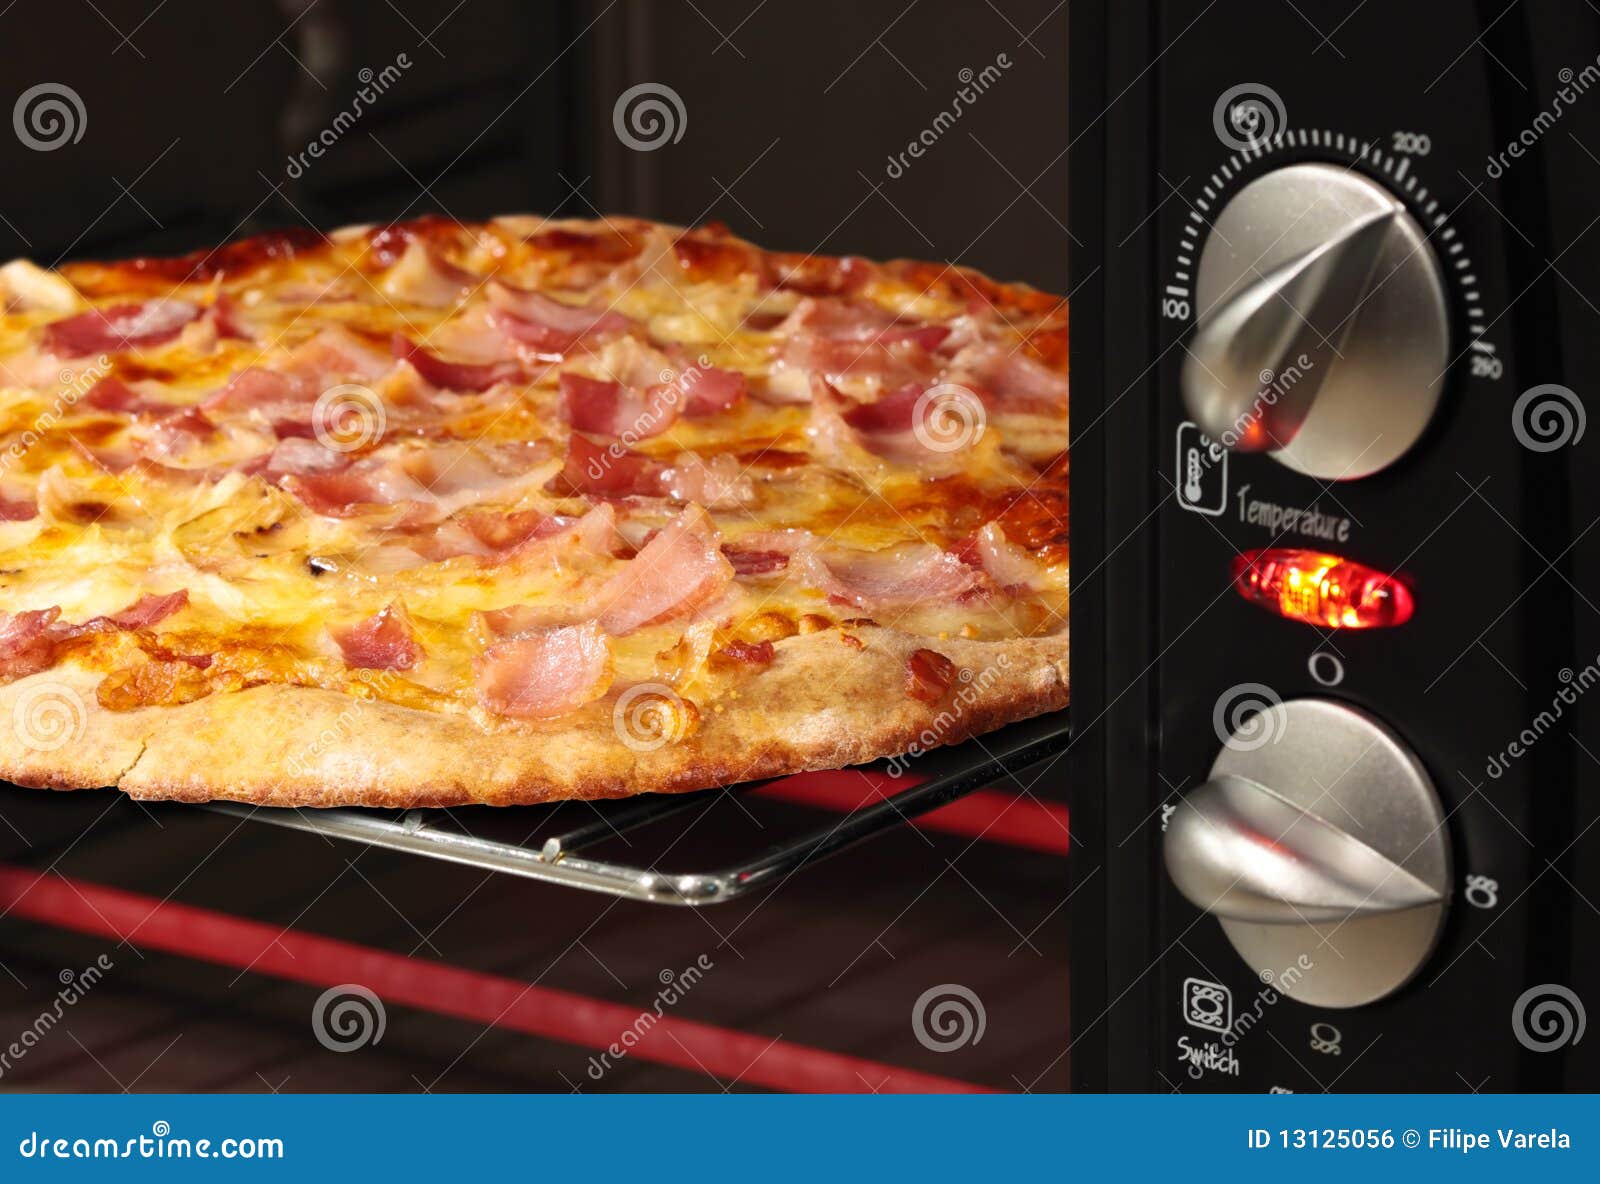 функция пицца в духовке что это фото 102